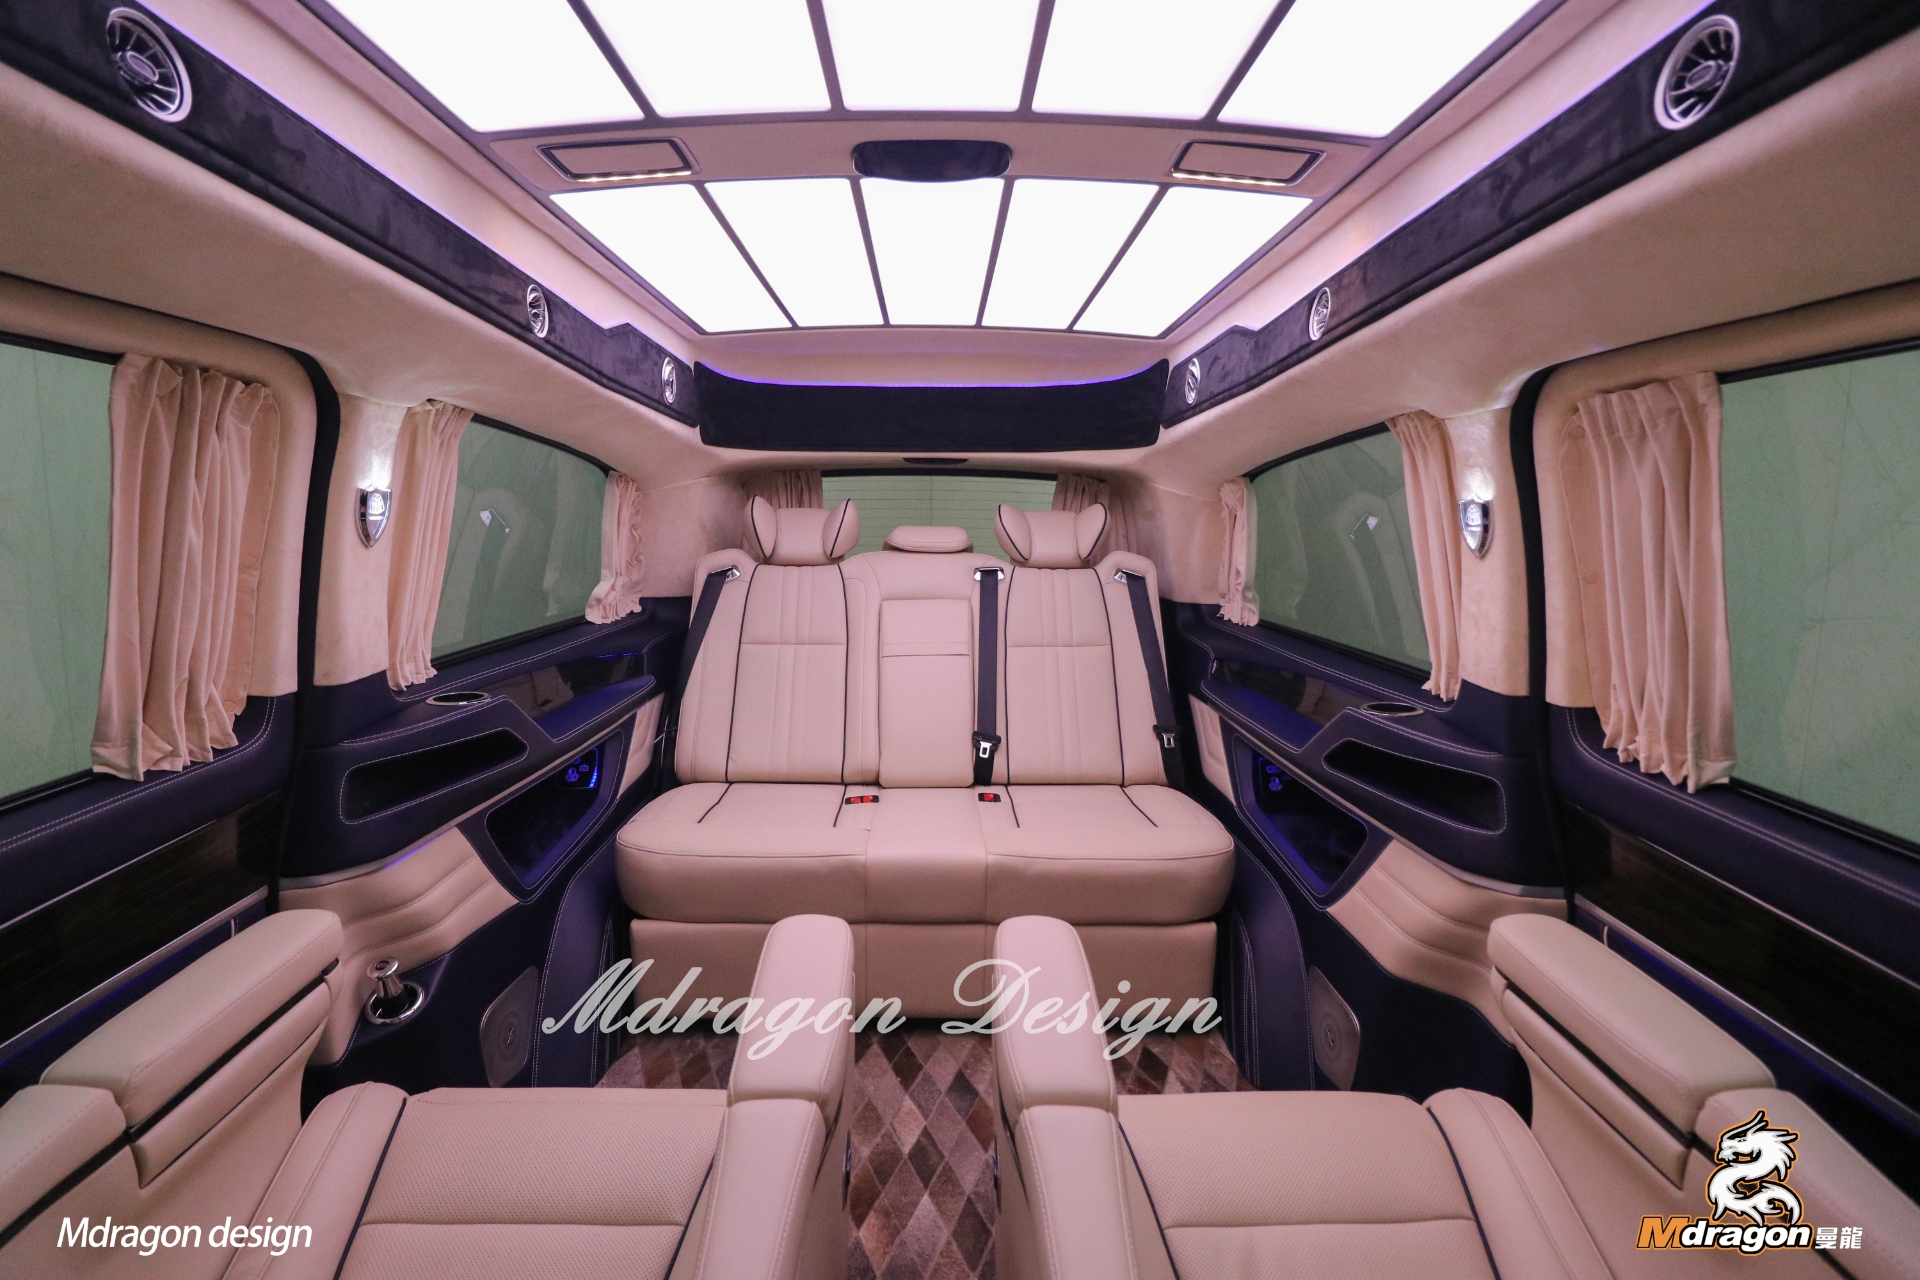 No.370 2015-2018 Benz Vito interior modification